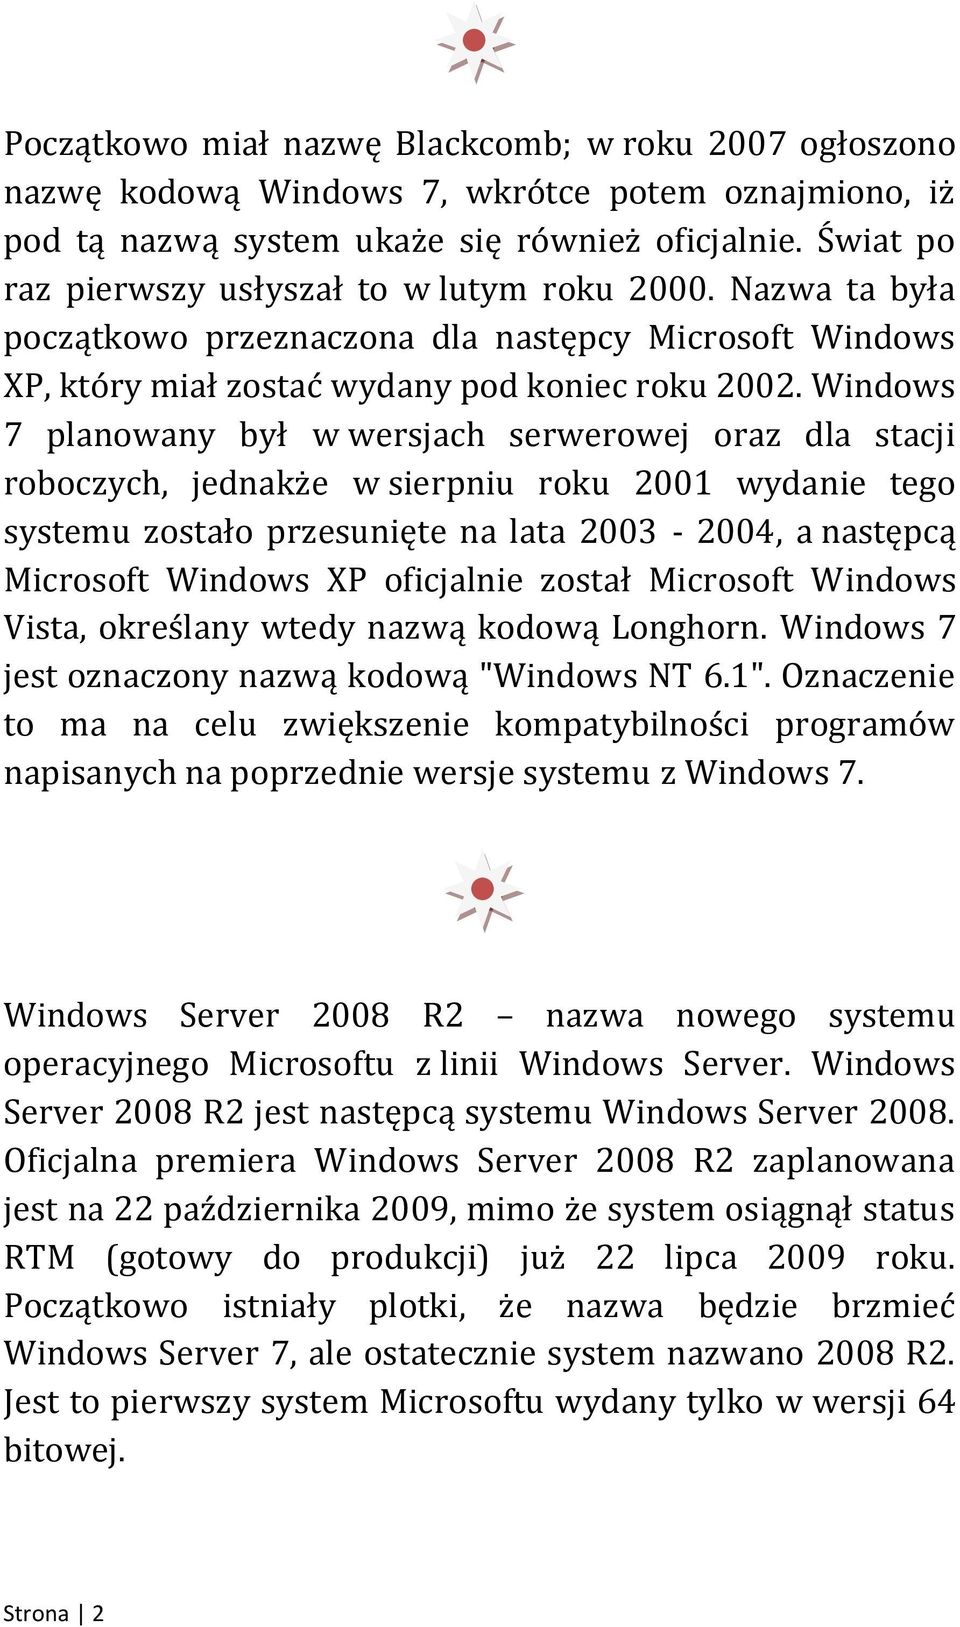 Windows 7 planowany był w wersjach serwerowej oraz dla stacji roboczych, jednakże w sierpniu roku 2001 wydanie tego systemu zostało przesunięte na lata 2003-2004, a następcą Microsoft Windows XP